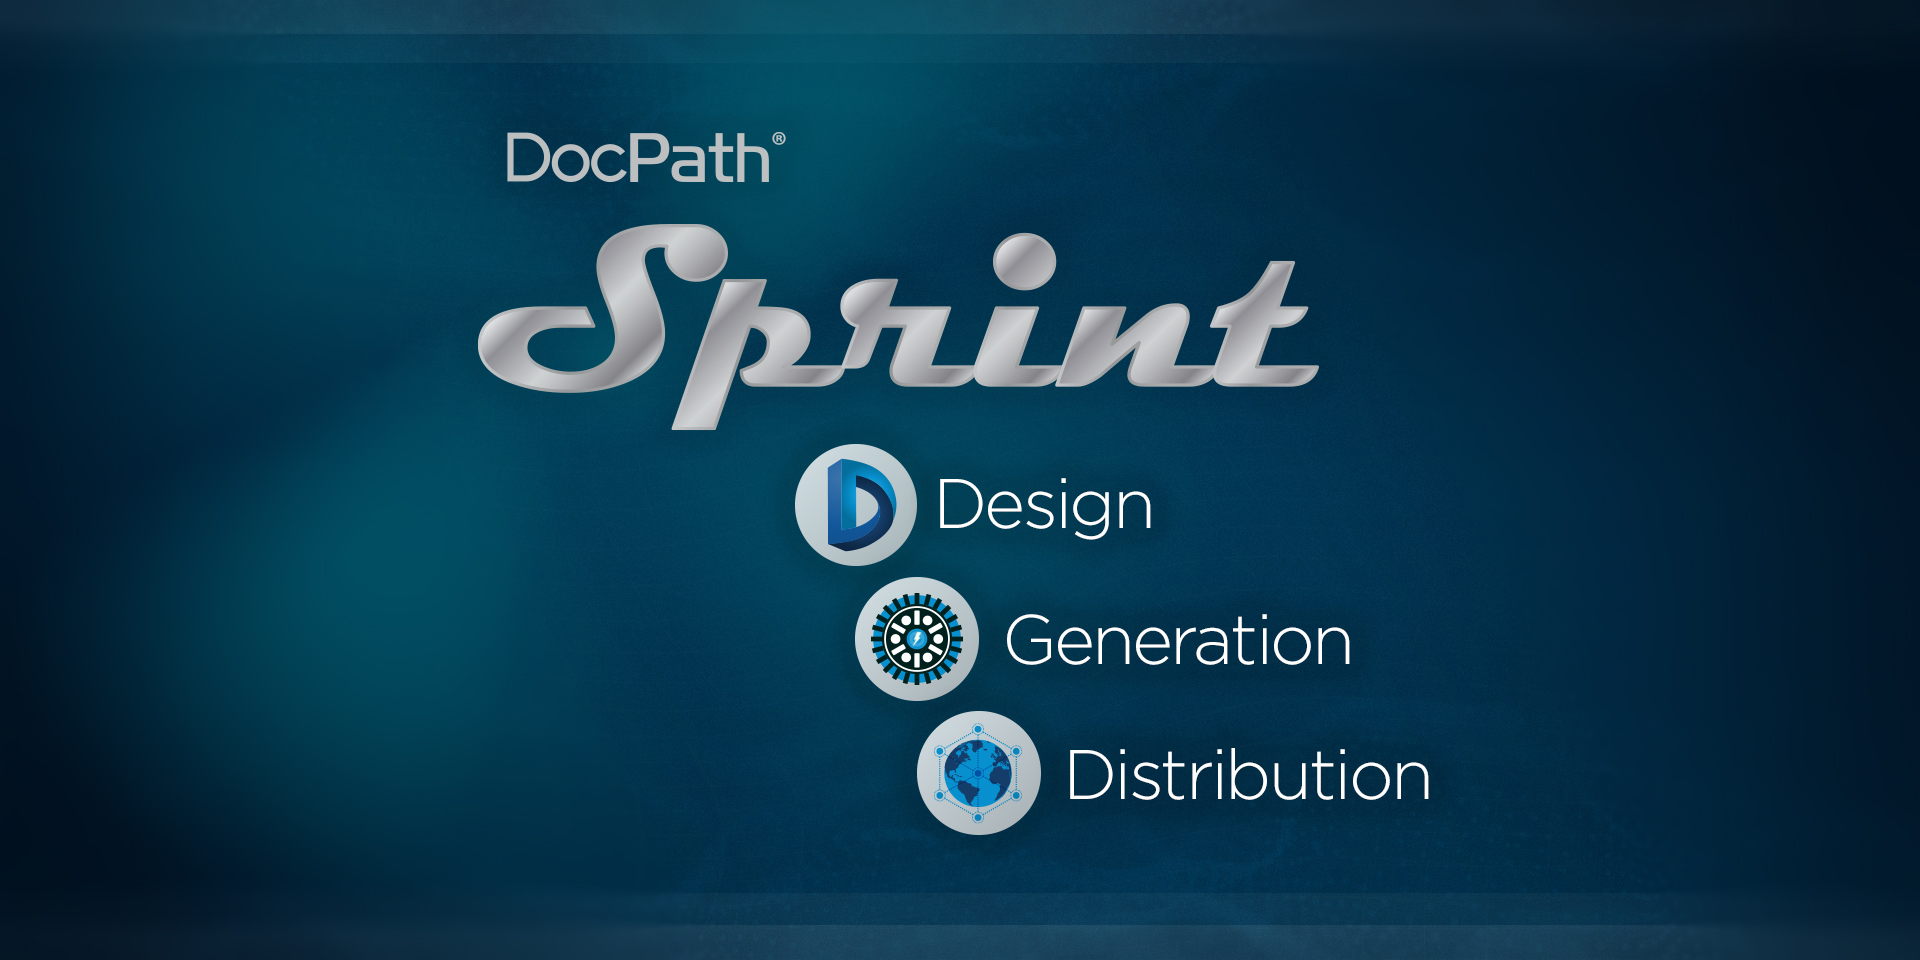 DocPath Sprint se integra perfectamente en cualquier arquitectura, aplicación o dispositivo y ofrece soporte multiplataforma que puede funcionar en cualquier sistema Windows, Linux o IBMi.